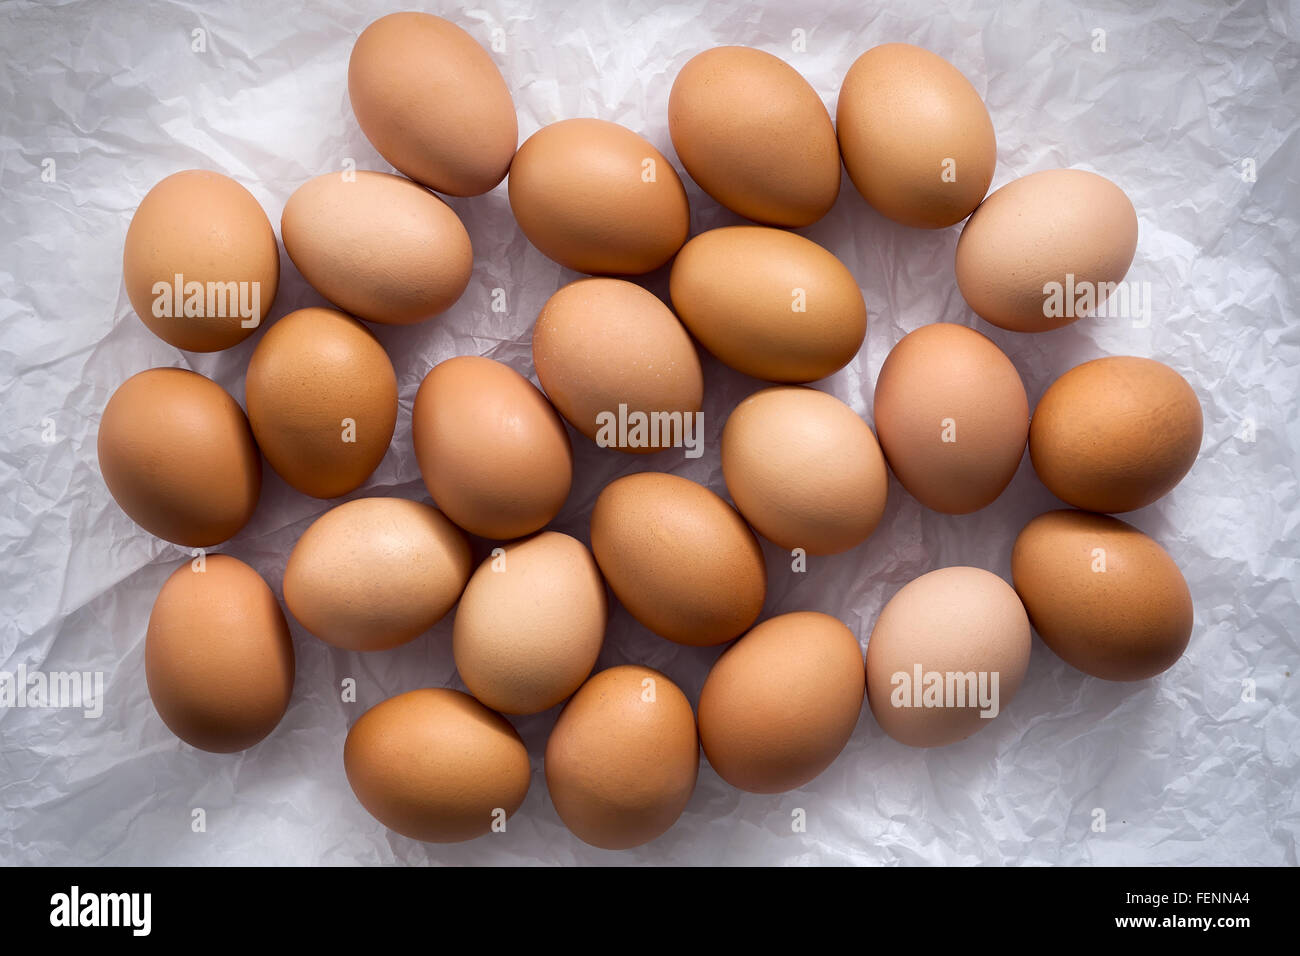 Uova di gallina piatto ancora laici vita con elegante cibo crudo fresco pollame ingrediente sano proteina di colesterolo vitamina naturale di ruggine Foto Stock